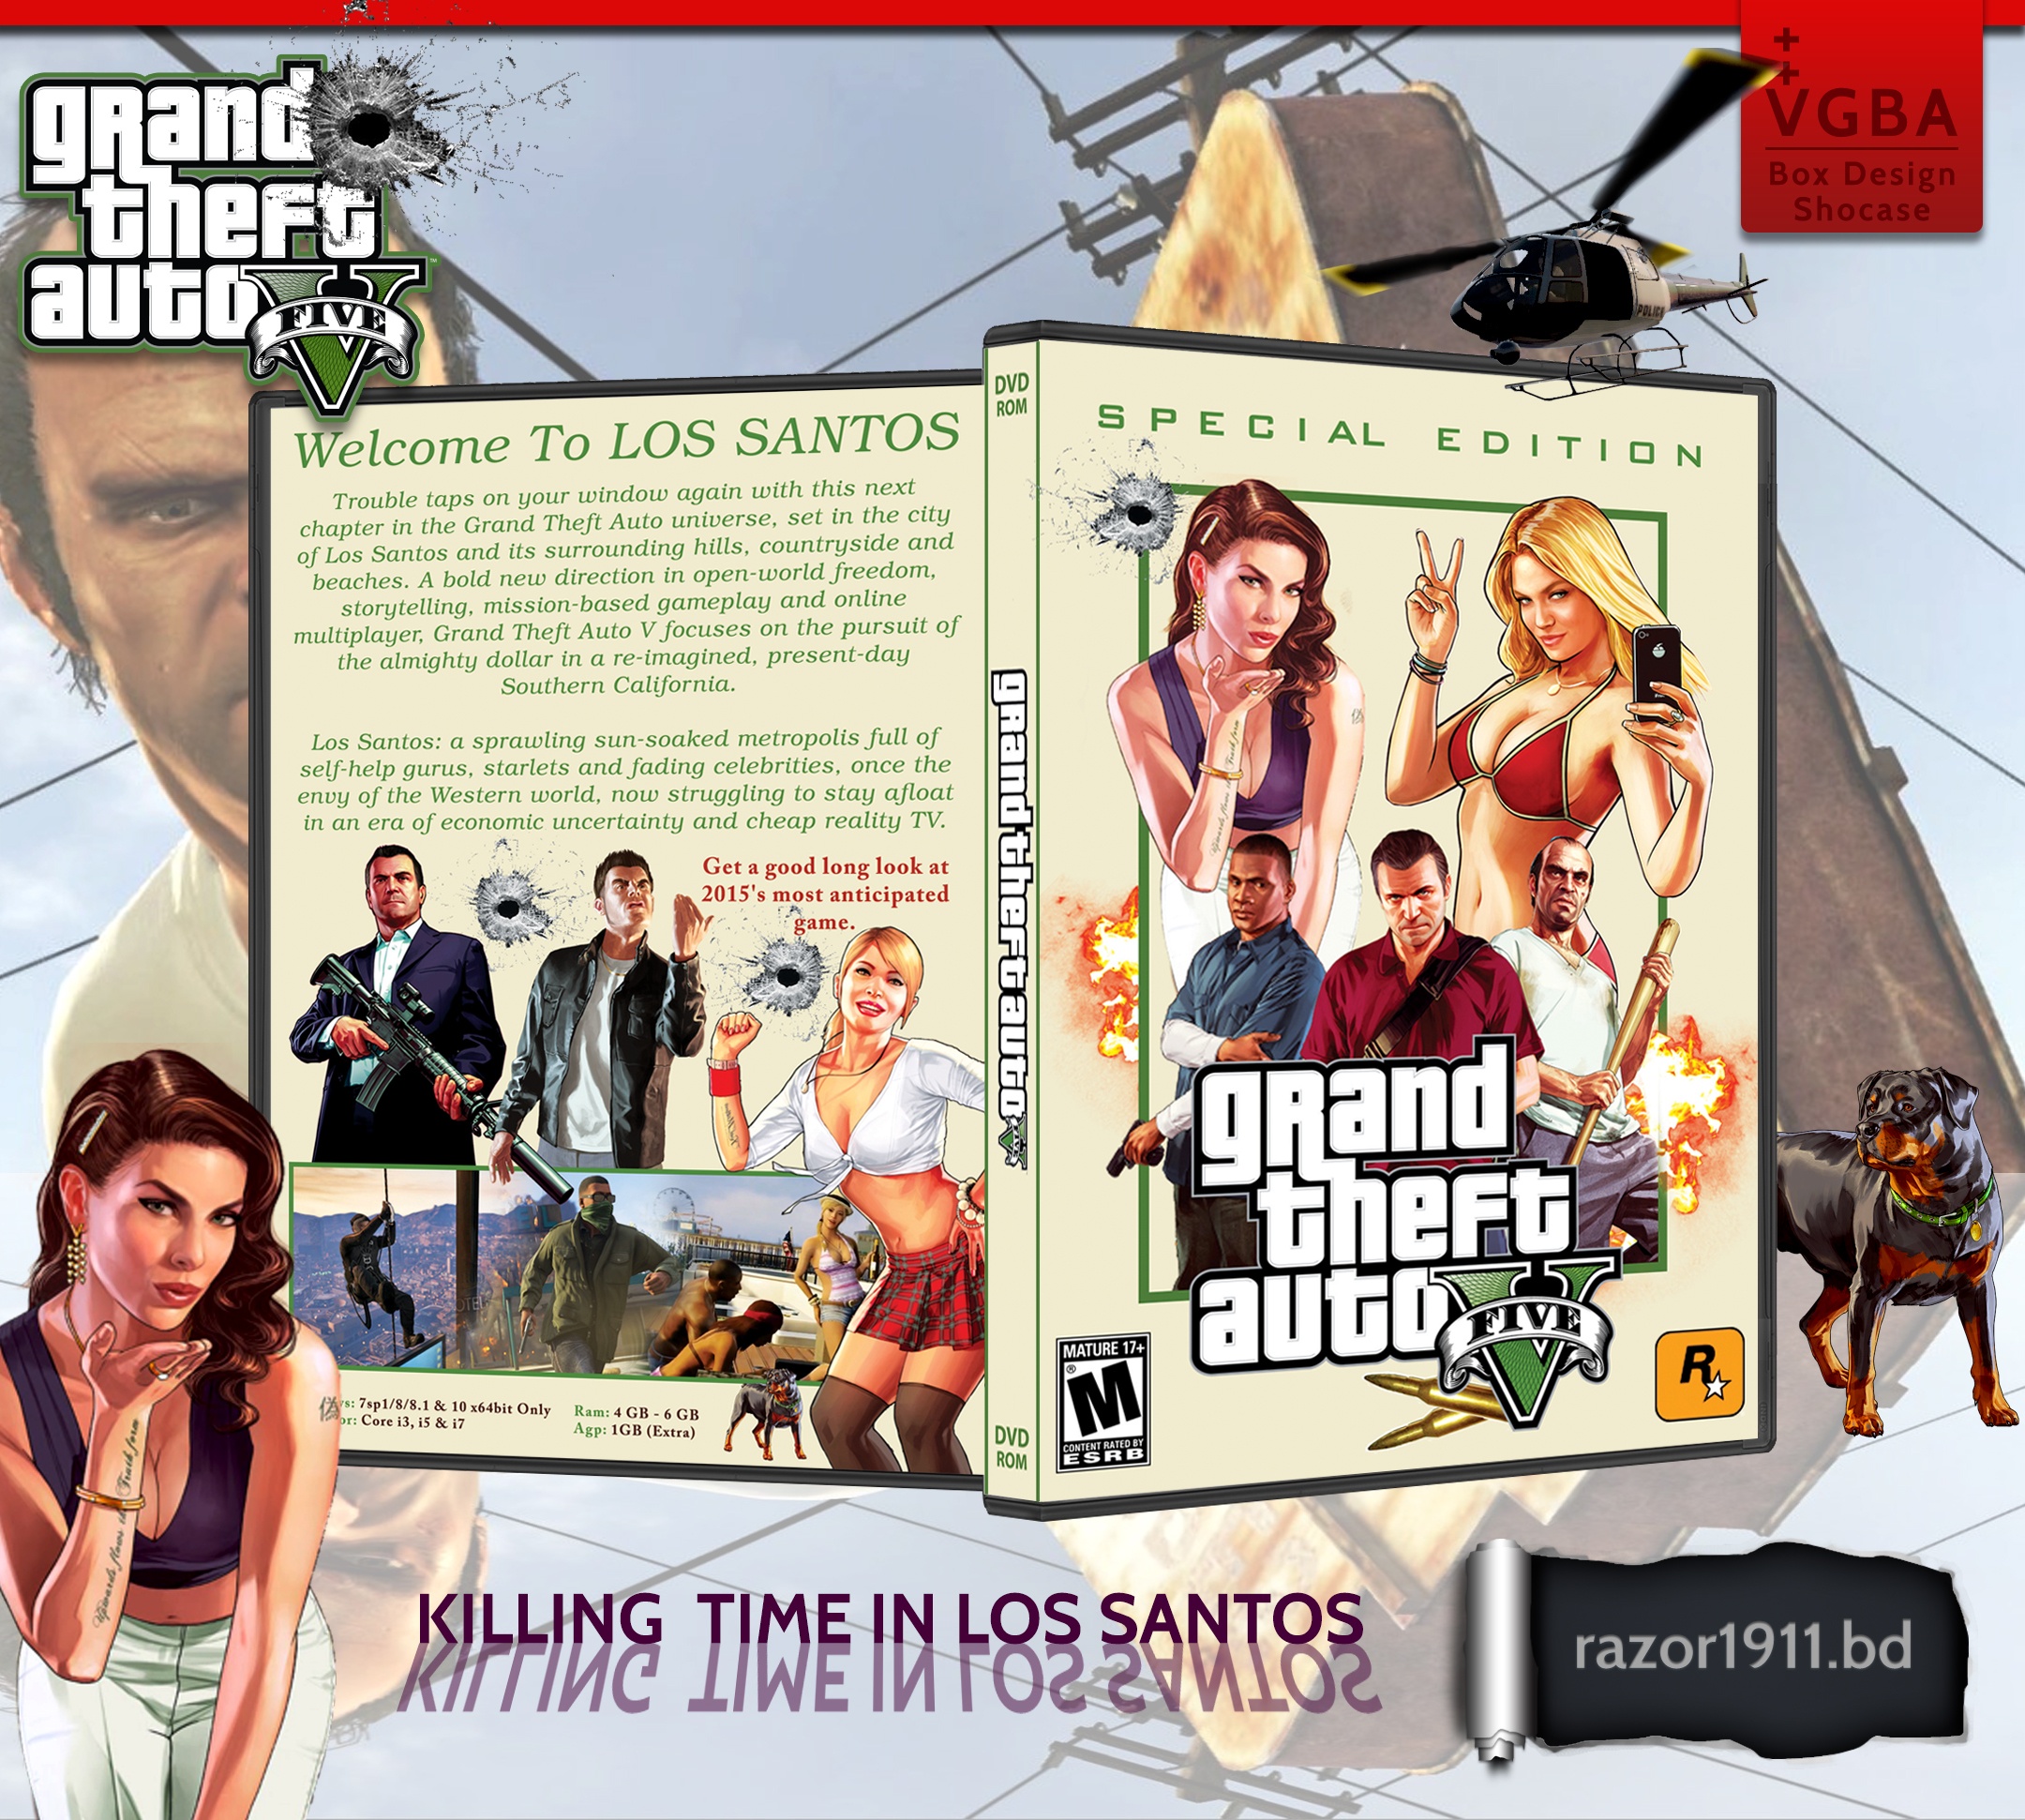 Grand Theft Auto V Special Edition box cover